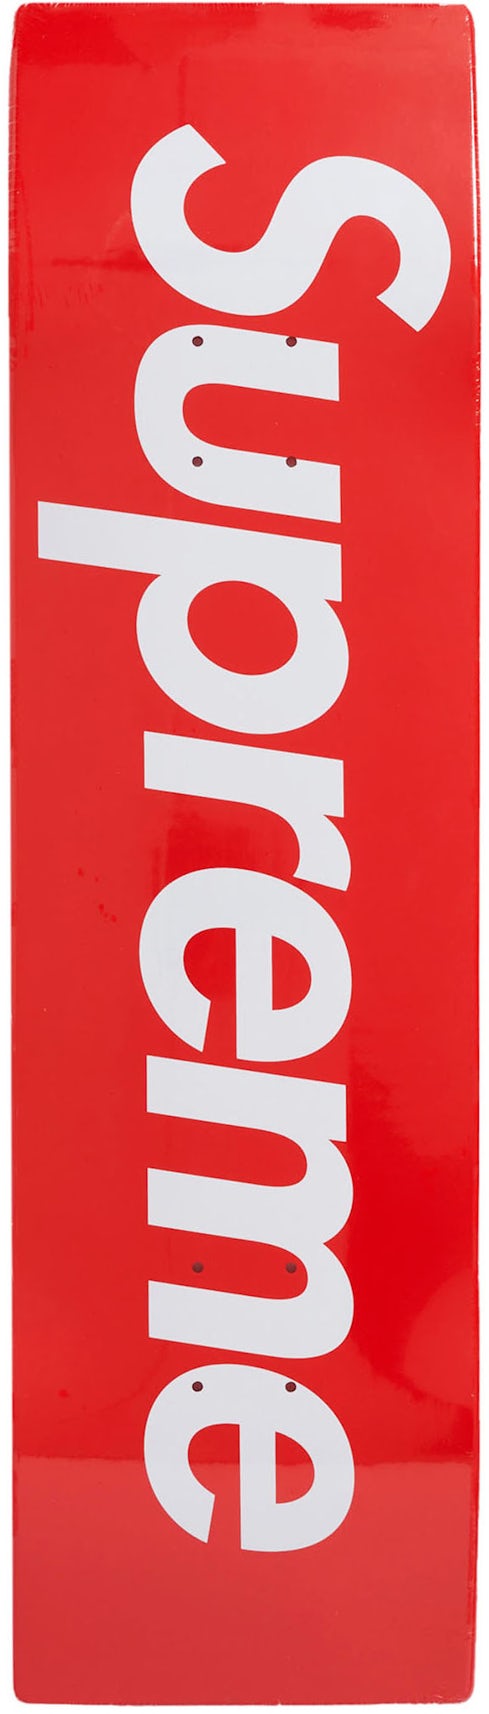 Supreme Sticker - Red 100% AUTHENTIC